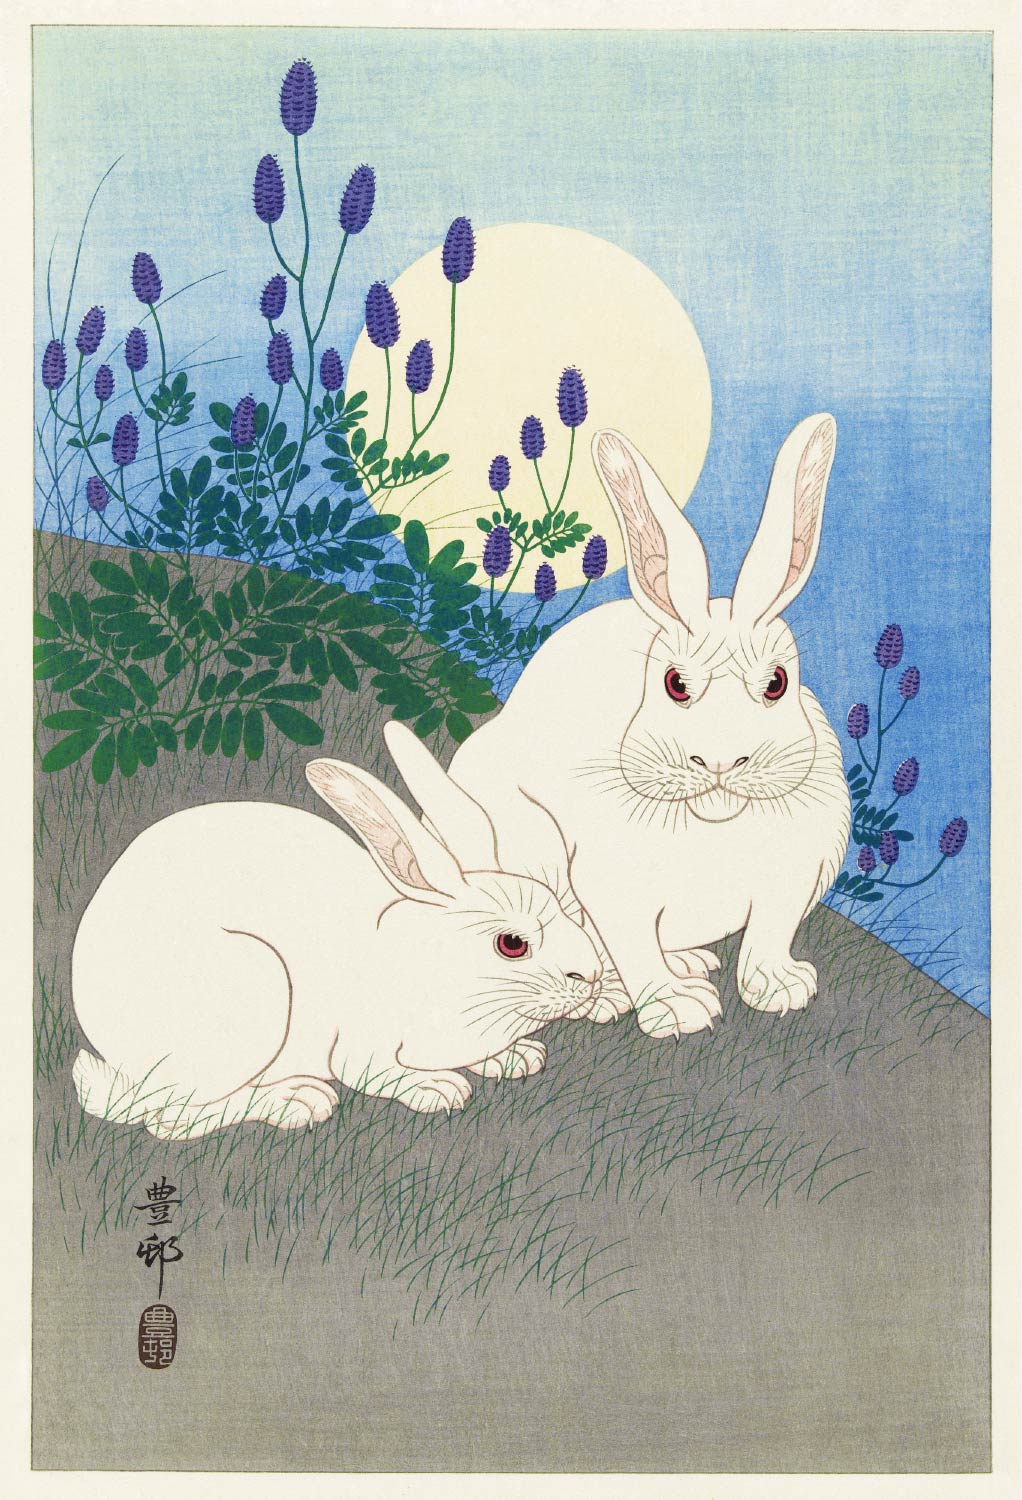 【無料壁紙】小原 古邨「満月のうさぎ (1920-1930)」 / Ohara Koson_Rabbits at full moon (1920-1930)